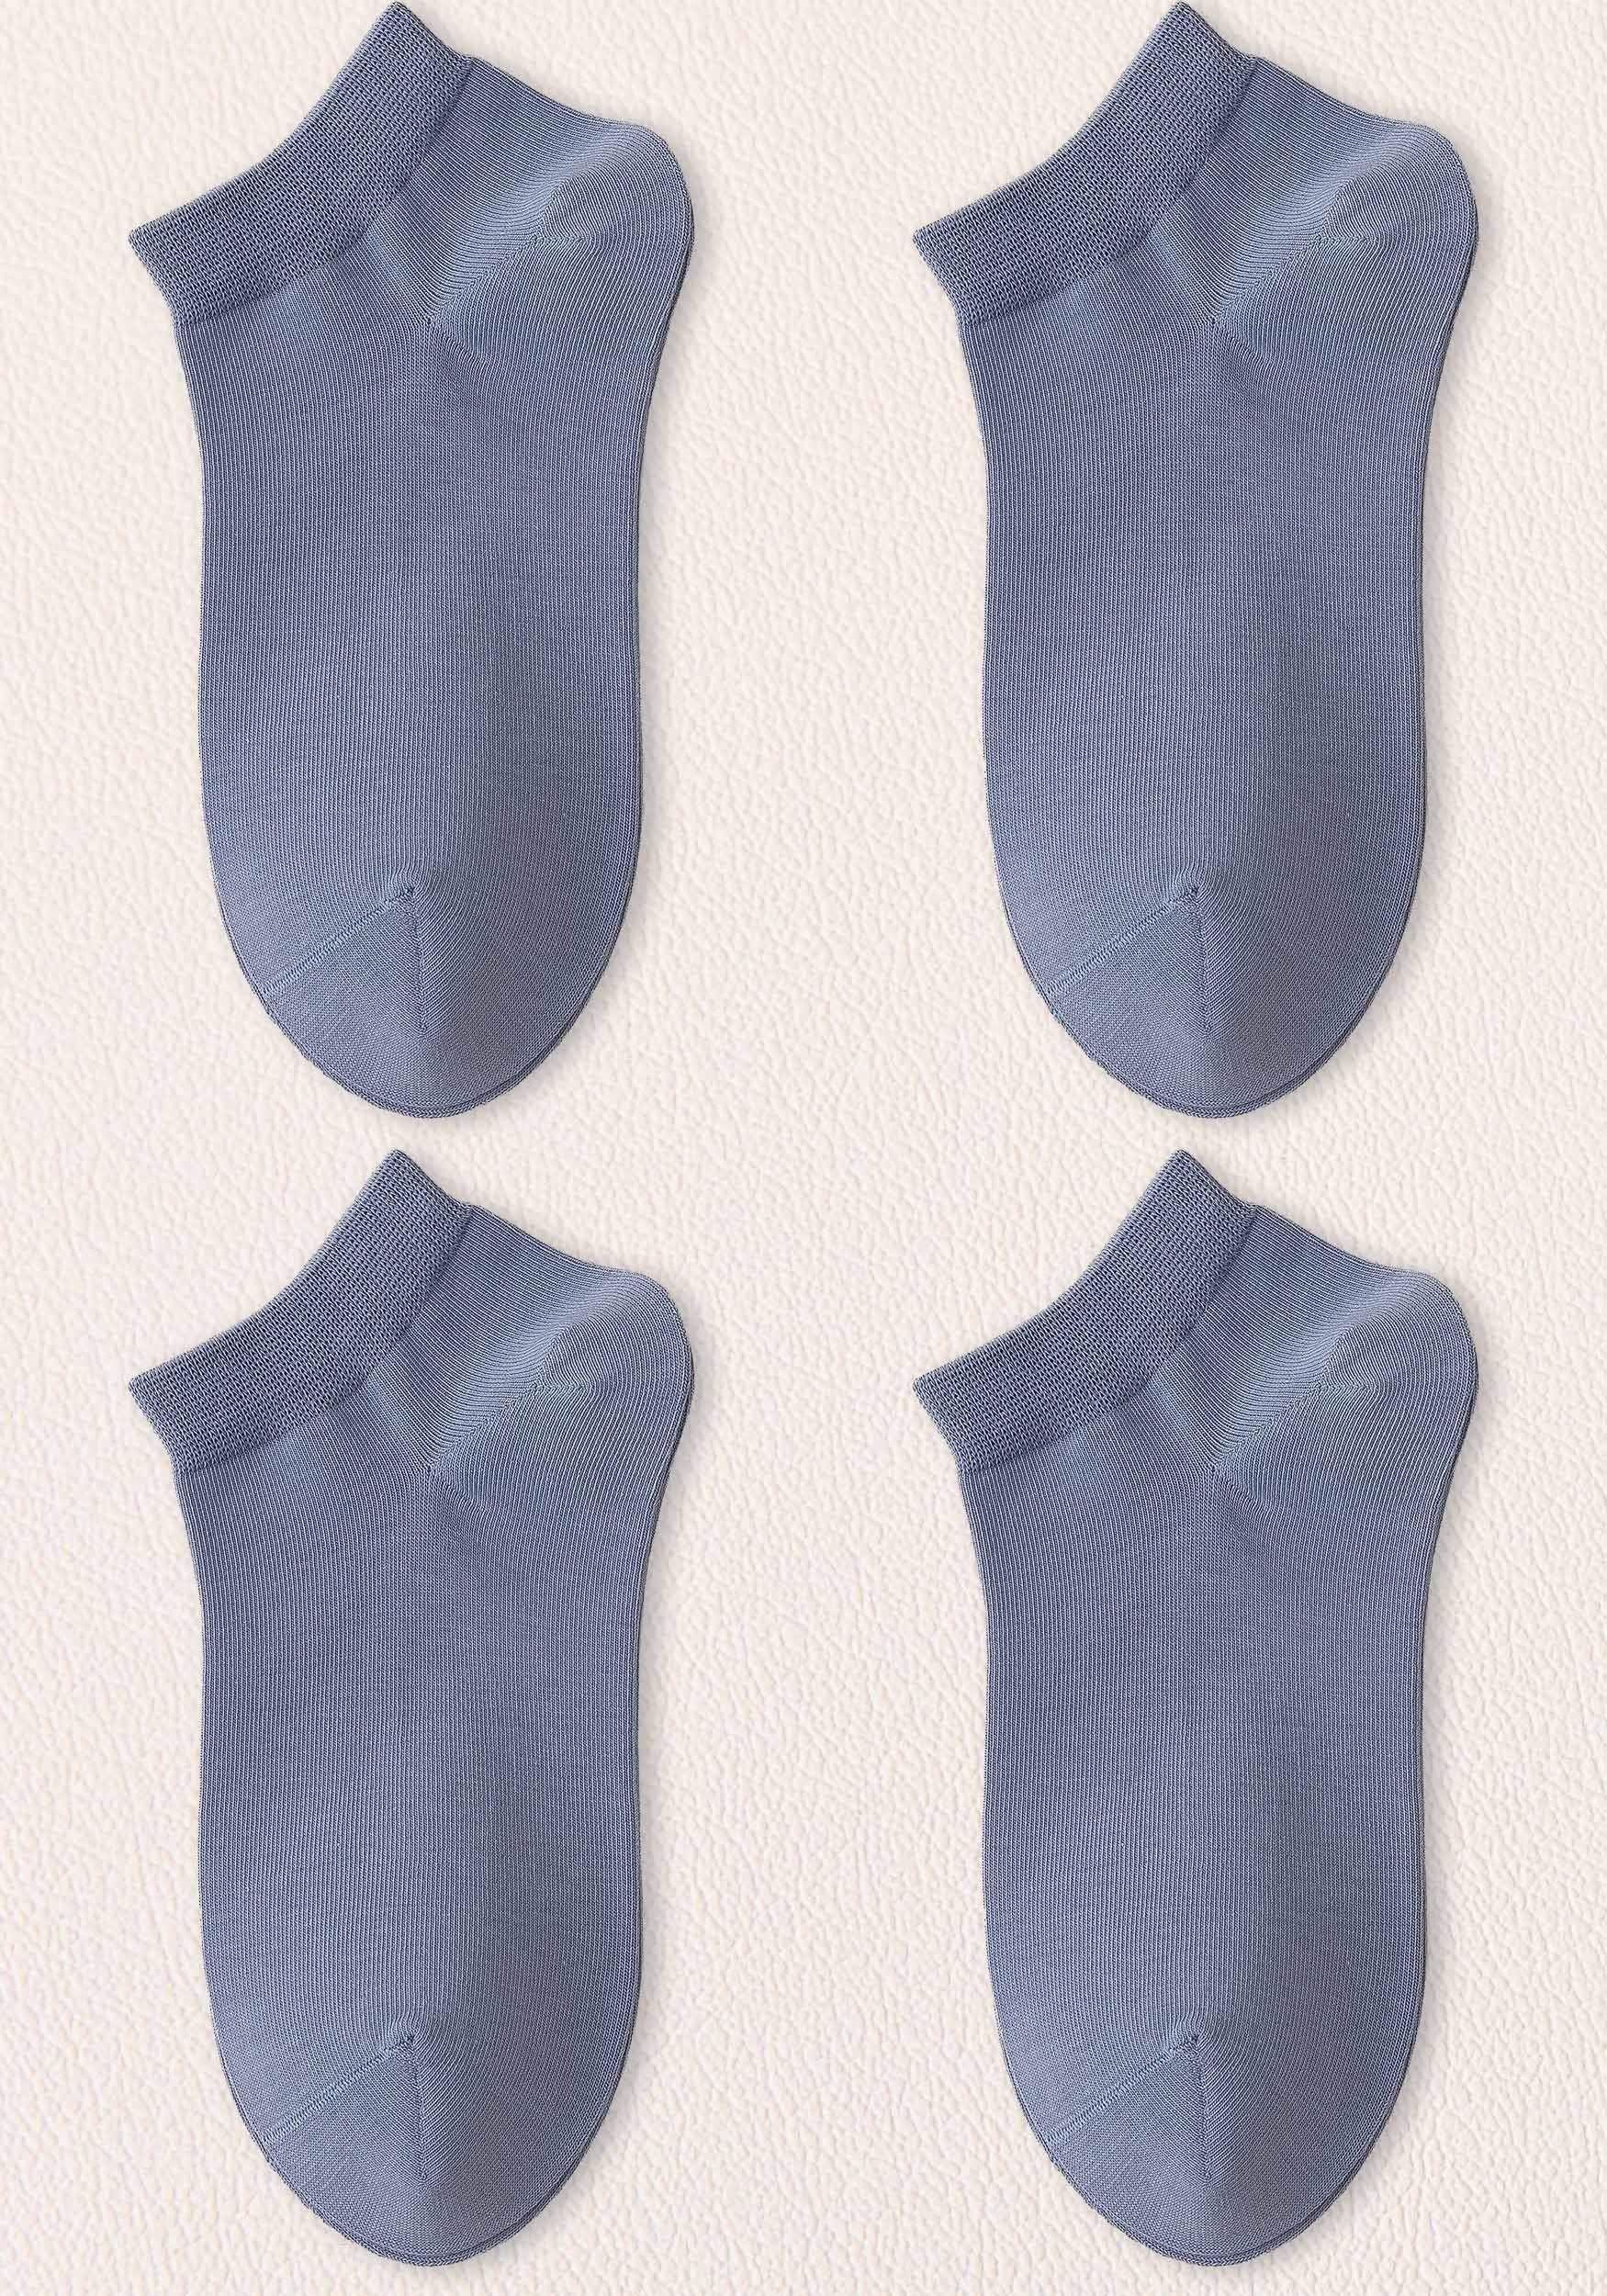 MAGICSHE Freizeitsocken Damen Socken– warm, atmungsaktiv,lange haltbar, kein Verrutschen (4-Paar) Invisible Socken bequem Sneakersocken Blau